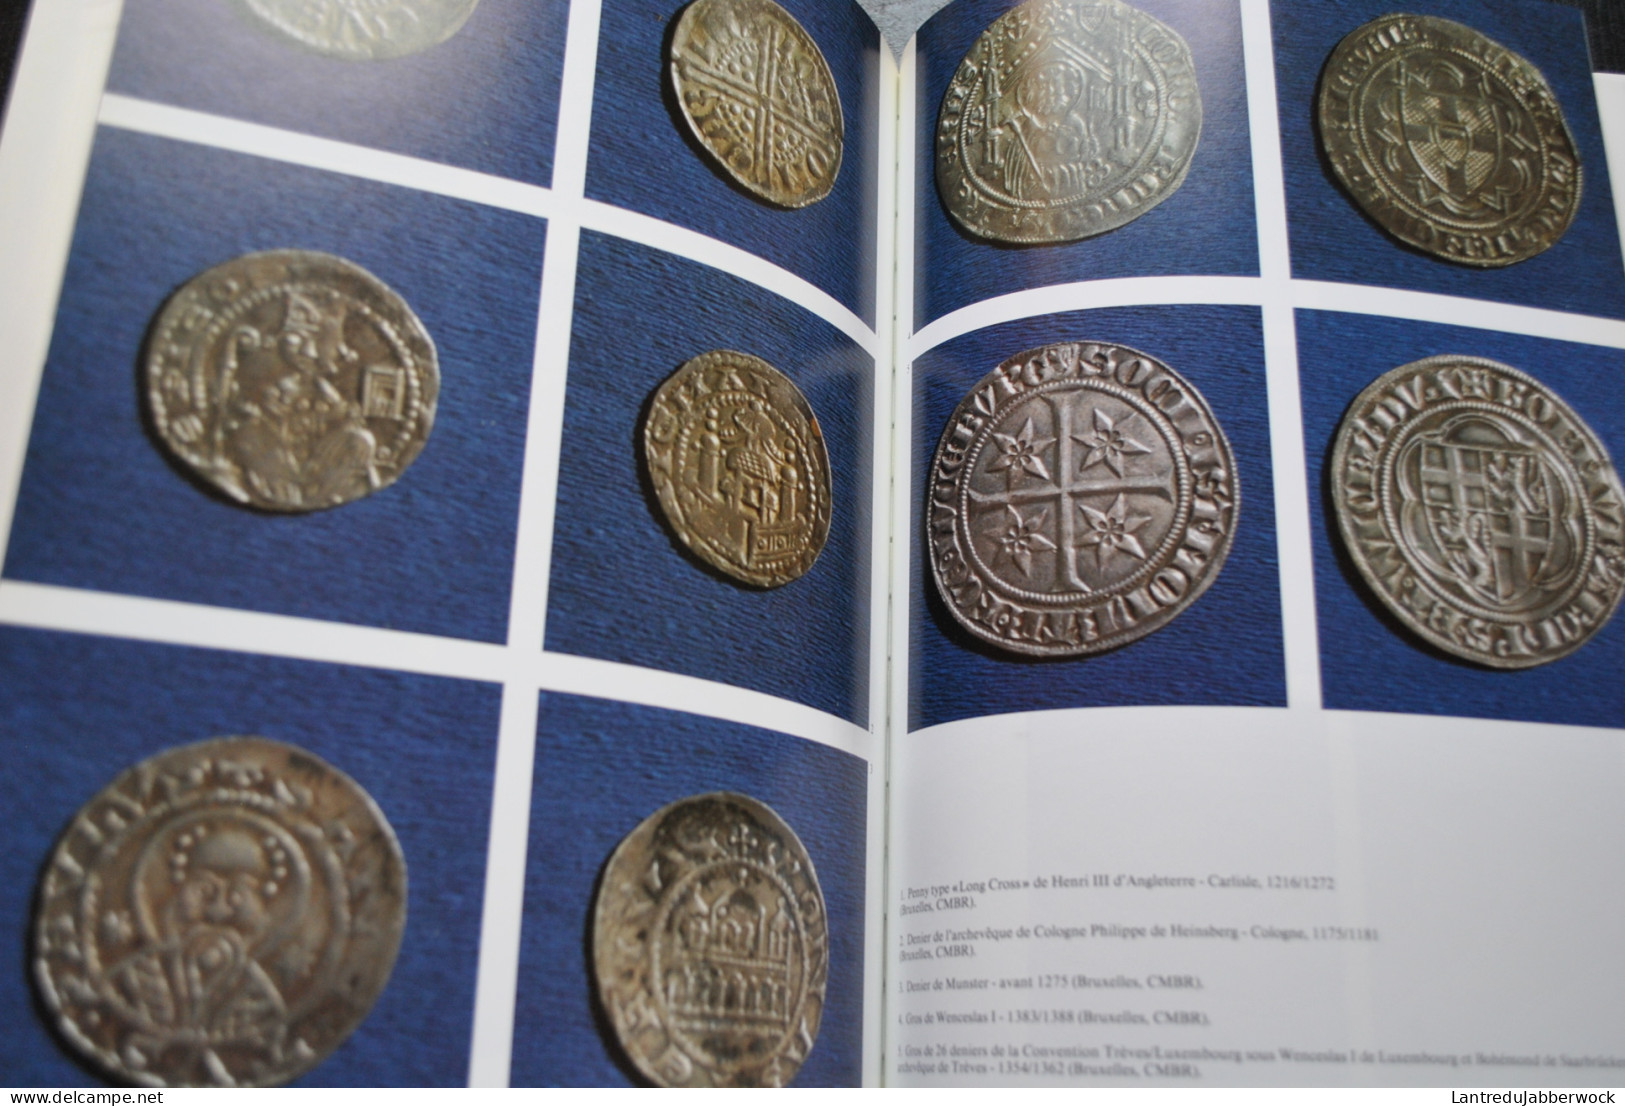 Une Monnaie Pour L'europe Crédit Communal 1991 - Grecs Romain Celtes Empire Carolingien Friesach Esterlin - Livres & Logiciels